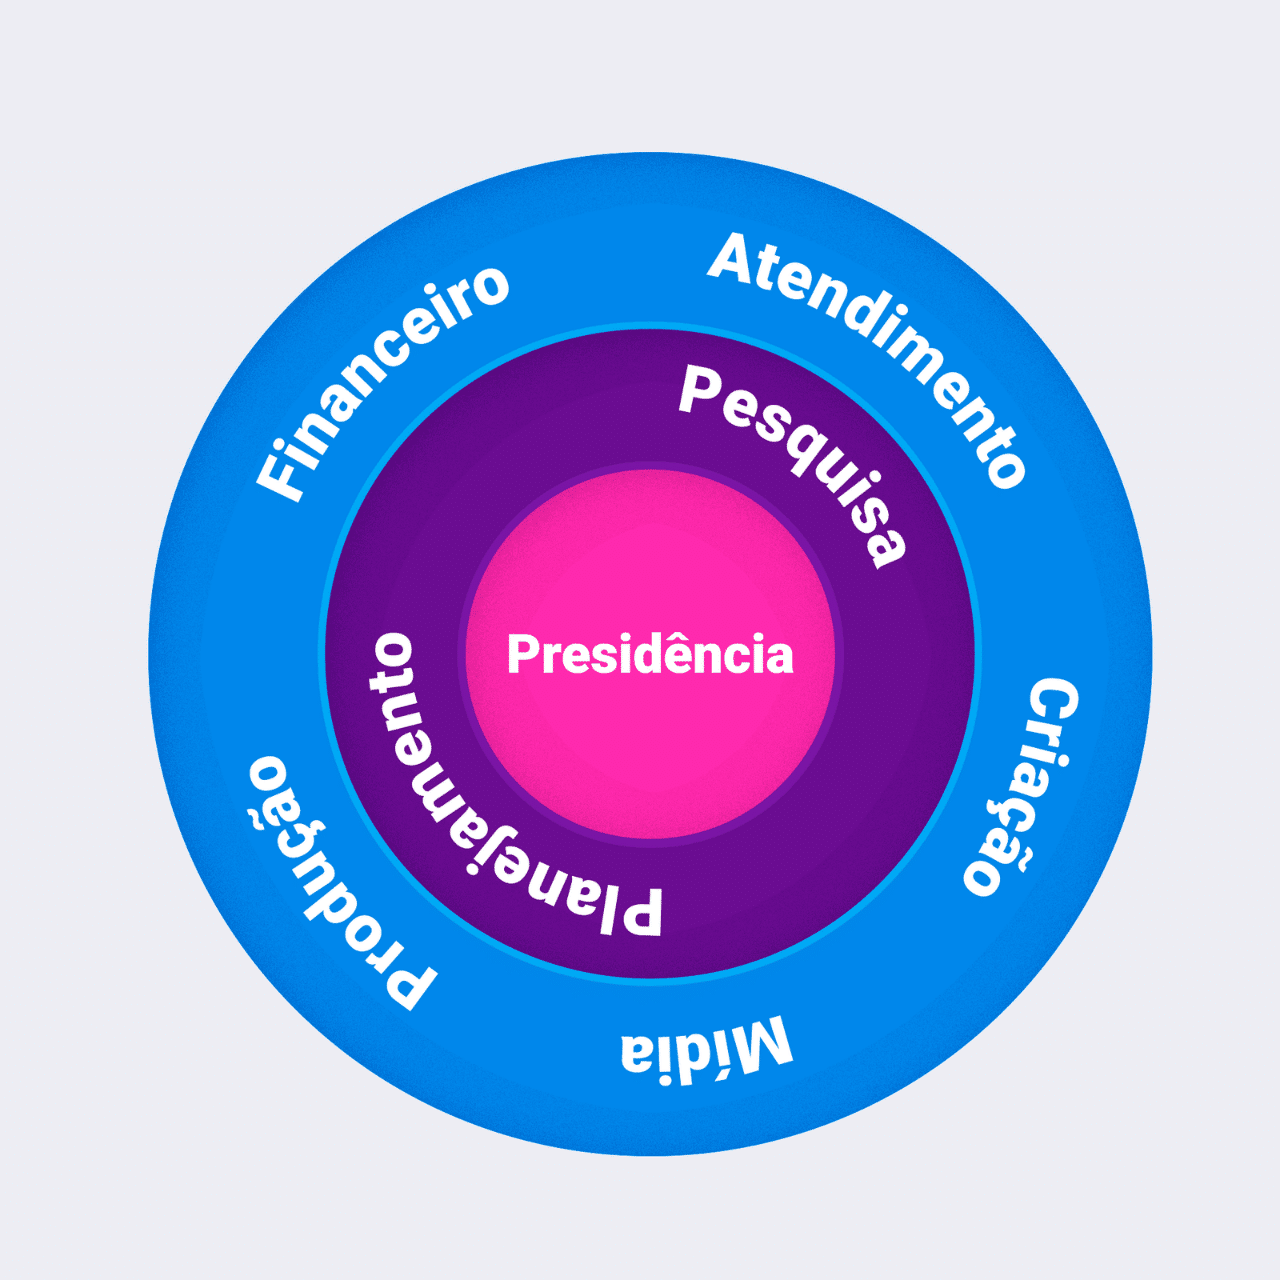 modelo de organograma circular para agências